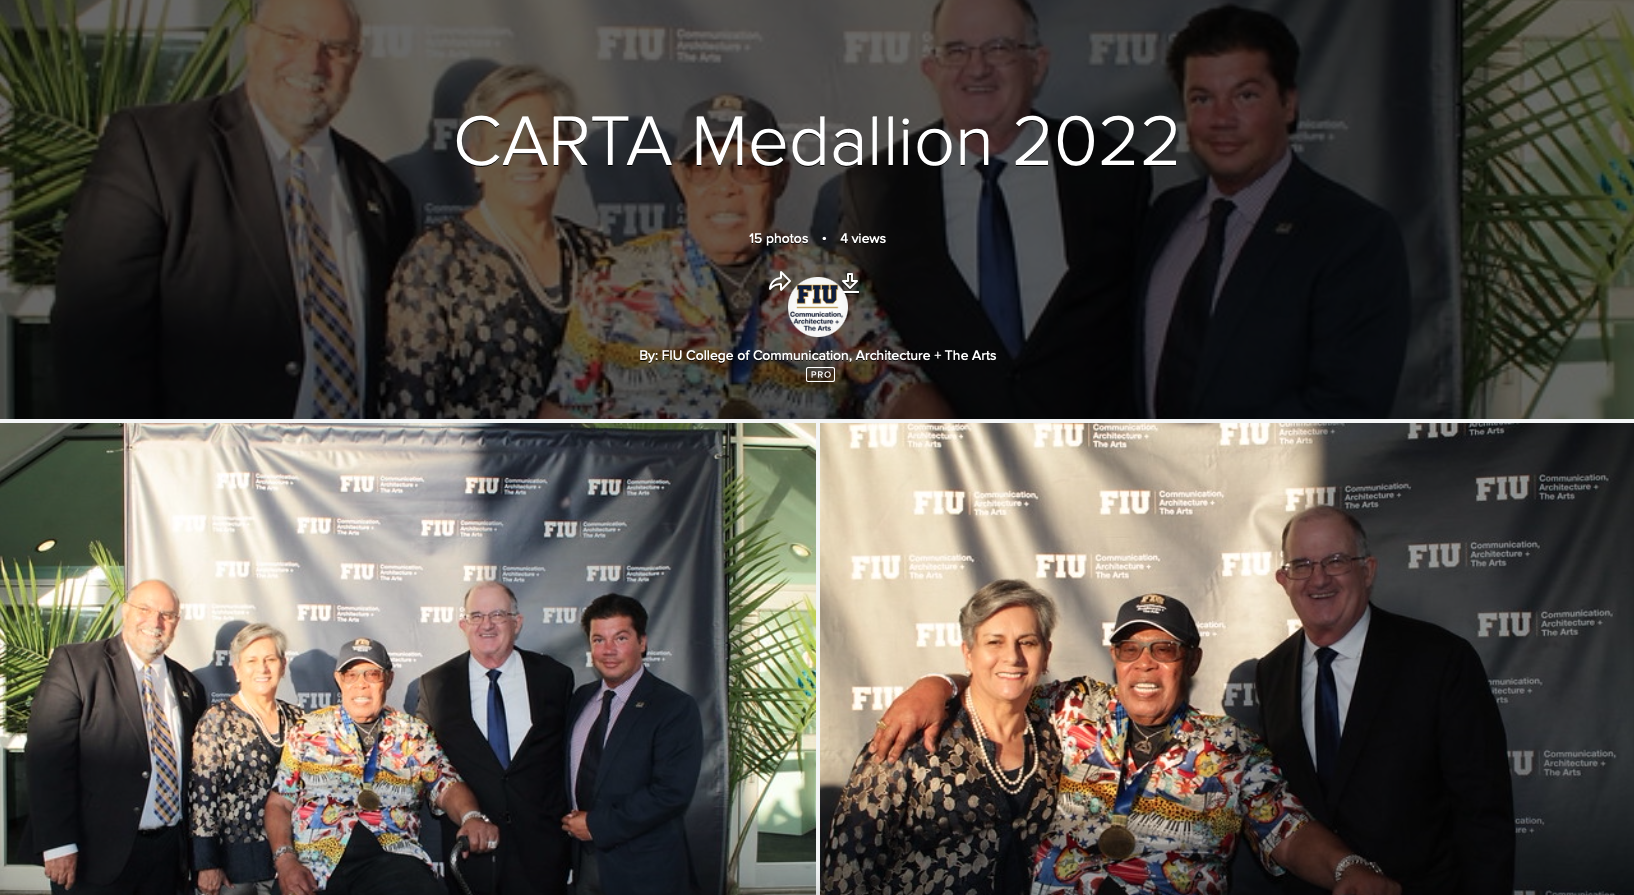 CARTA Medallion Flickr Album